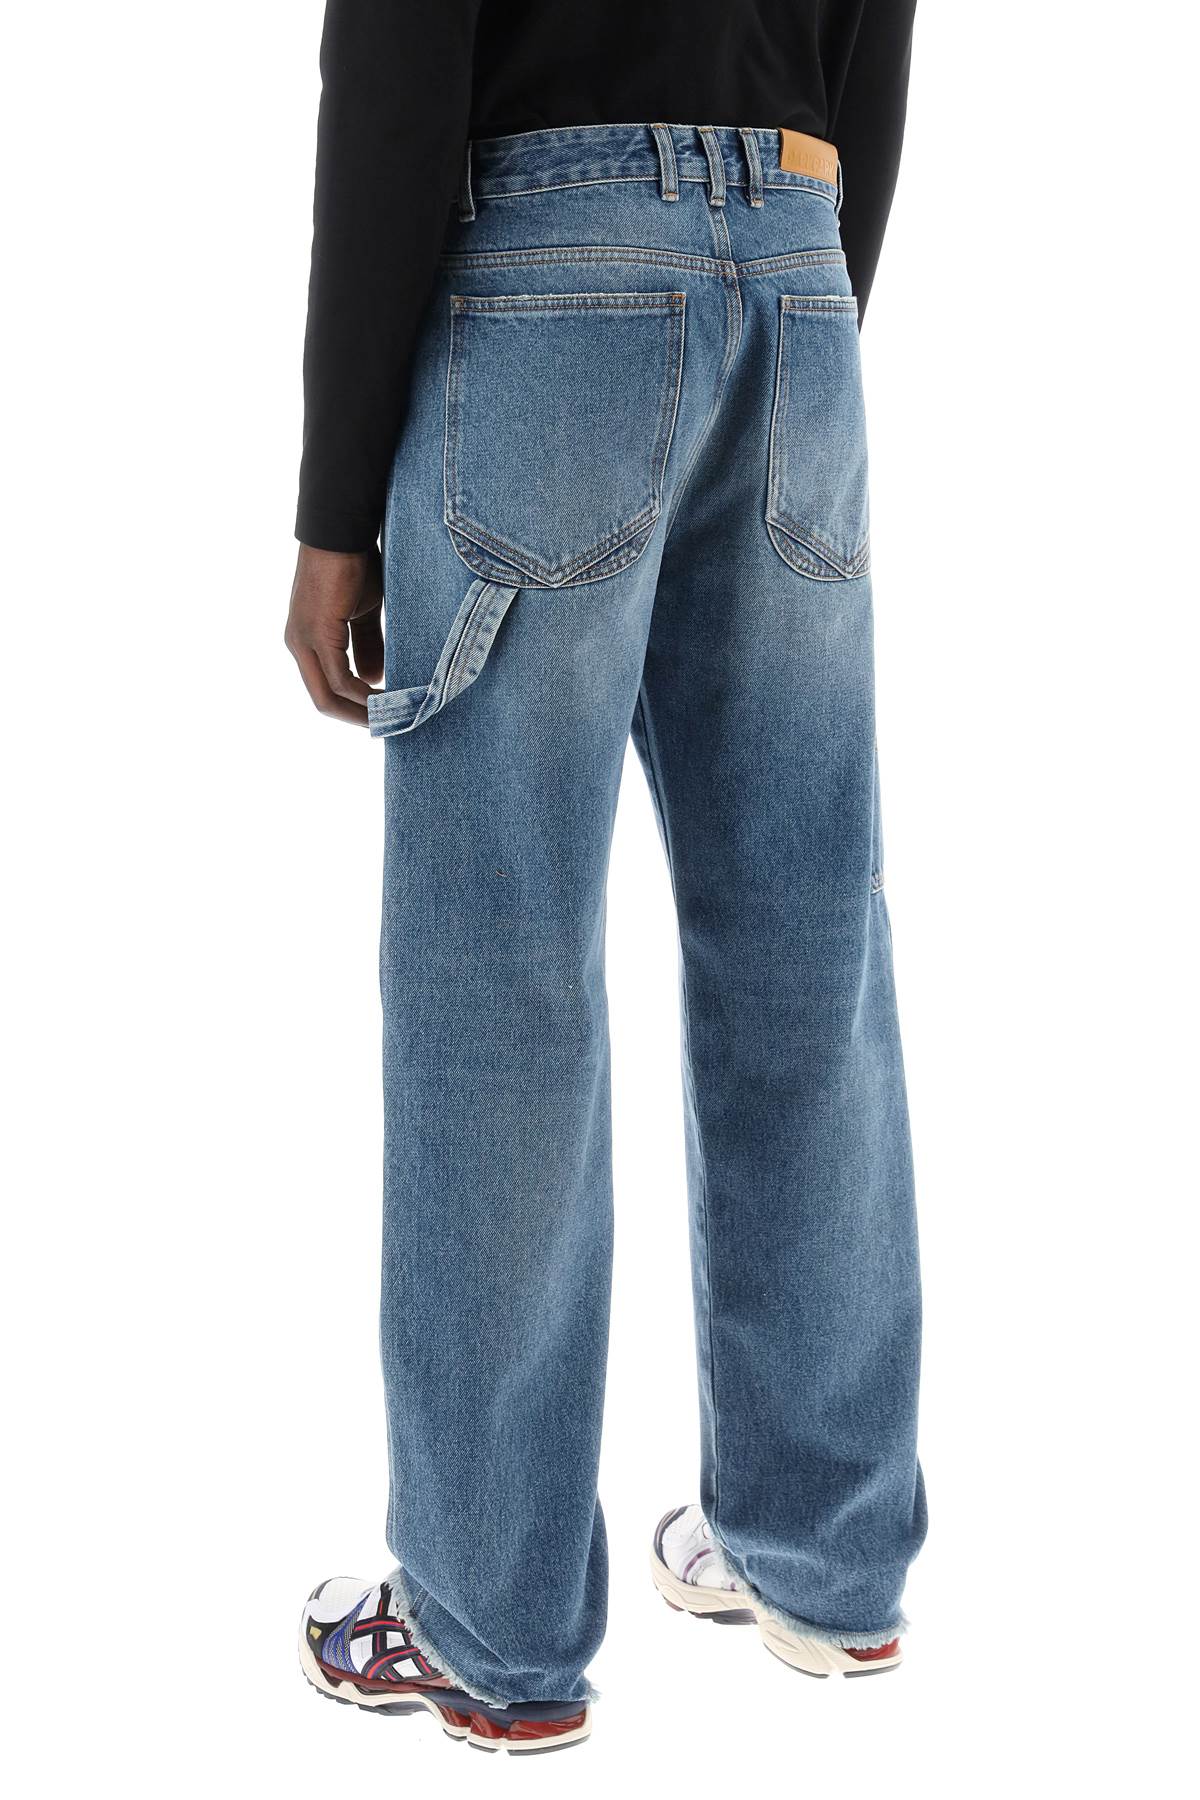 Darkpark john workwear jeans-2